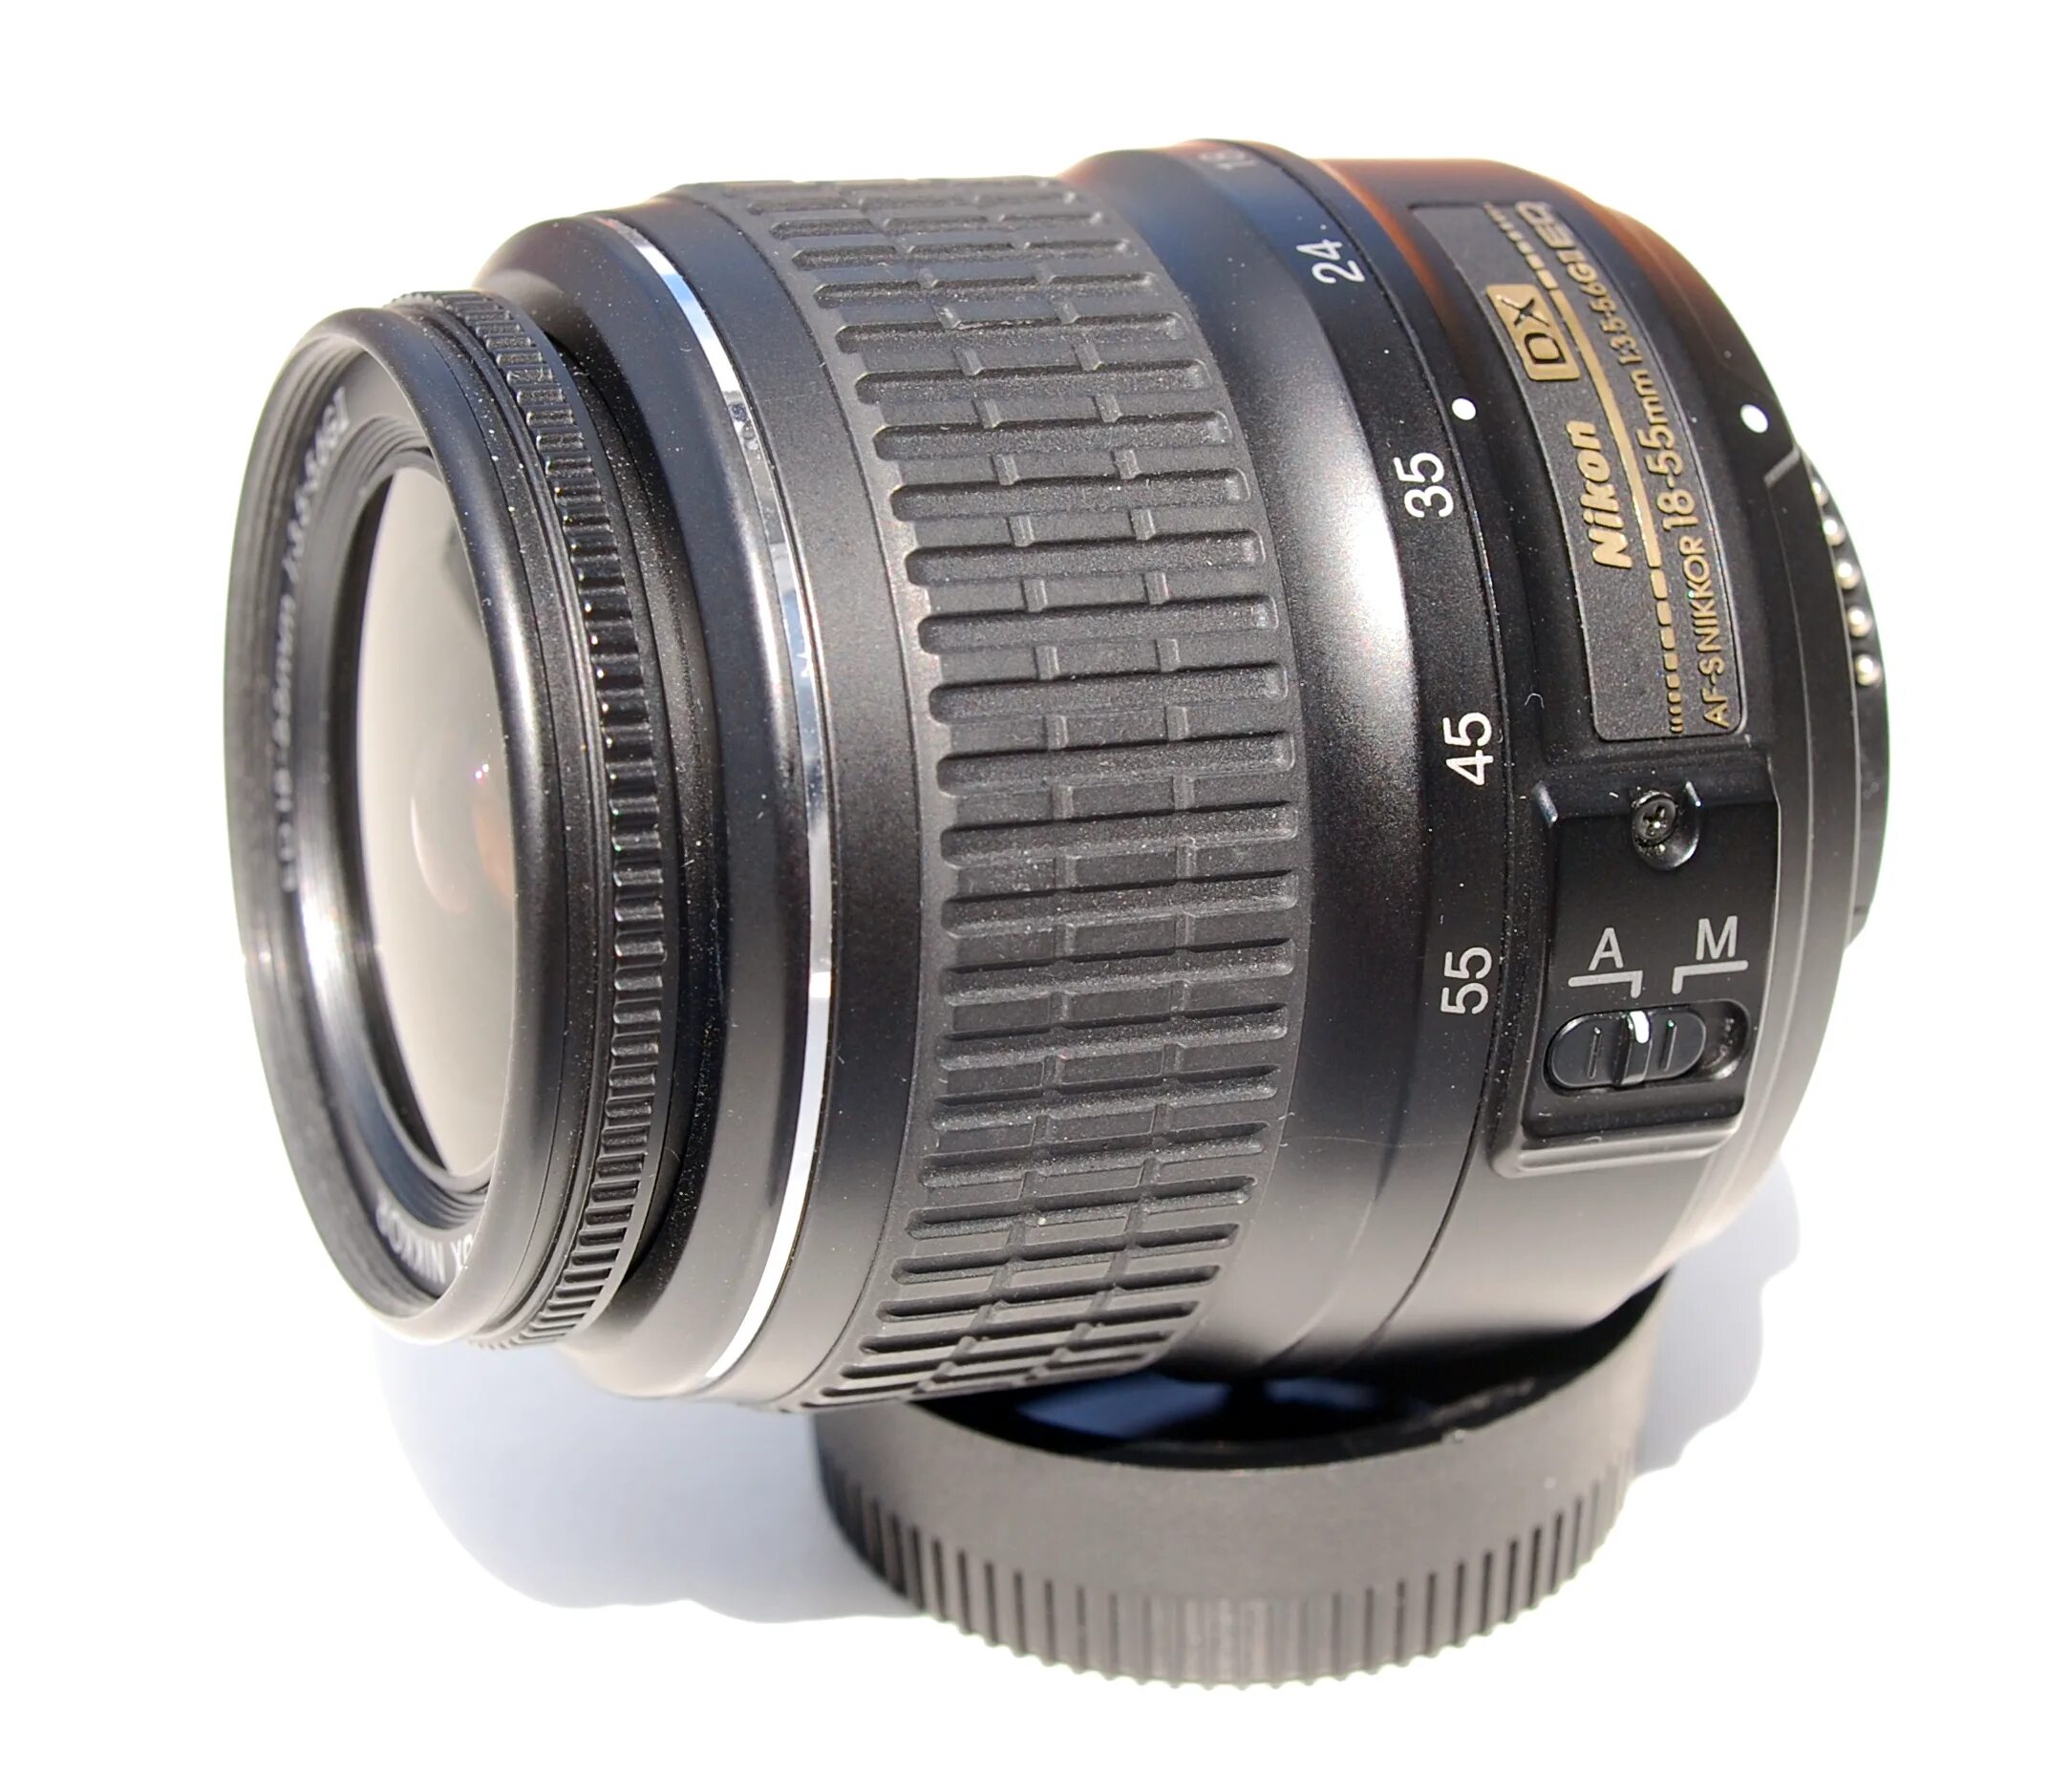 Af s 18 55mm. Nikon DX af s Nikkor 18 55mm. Nikon DX af-s Nikkor 18-55mm 1 3.5-5.6g. Nikon 18-55mm f/3.5-5.6g af-s VR DX.